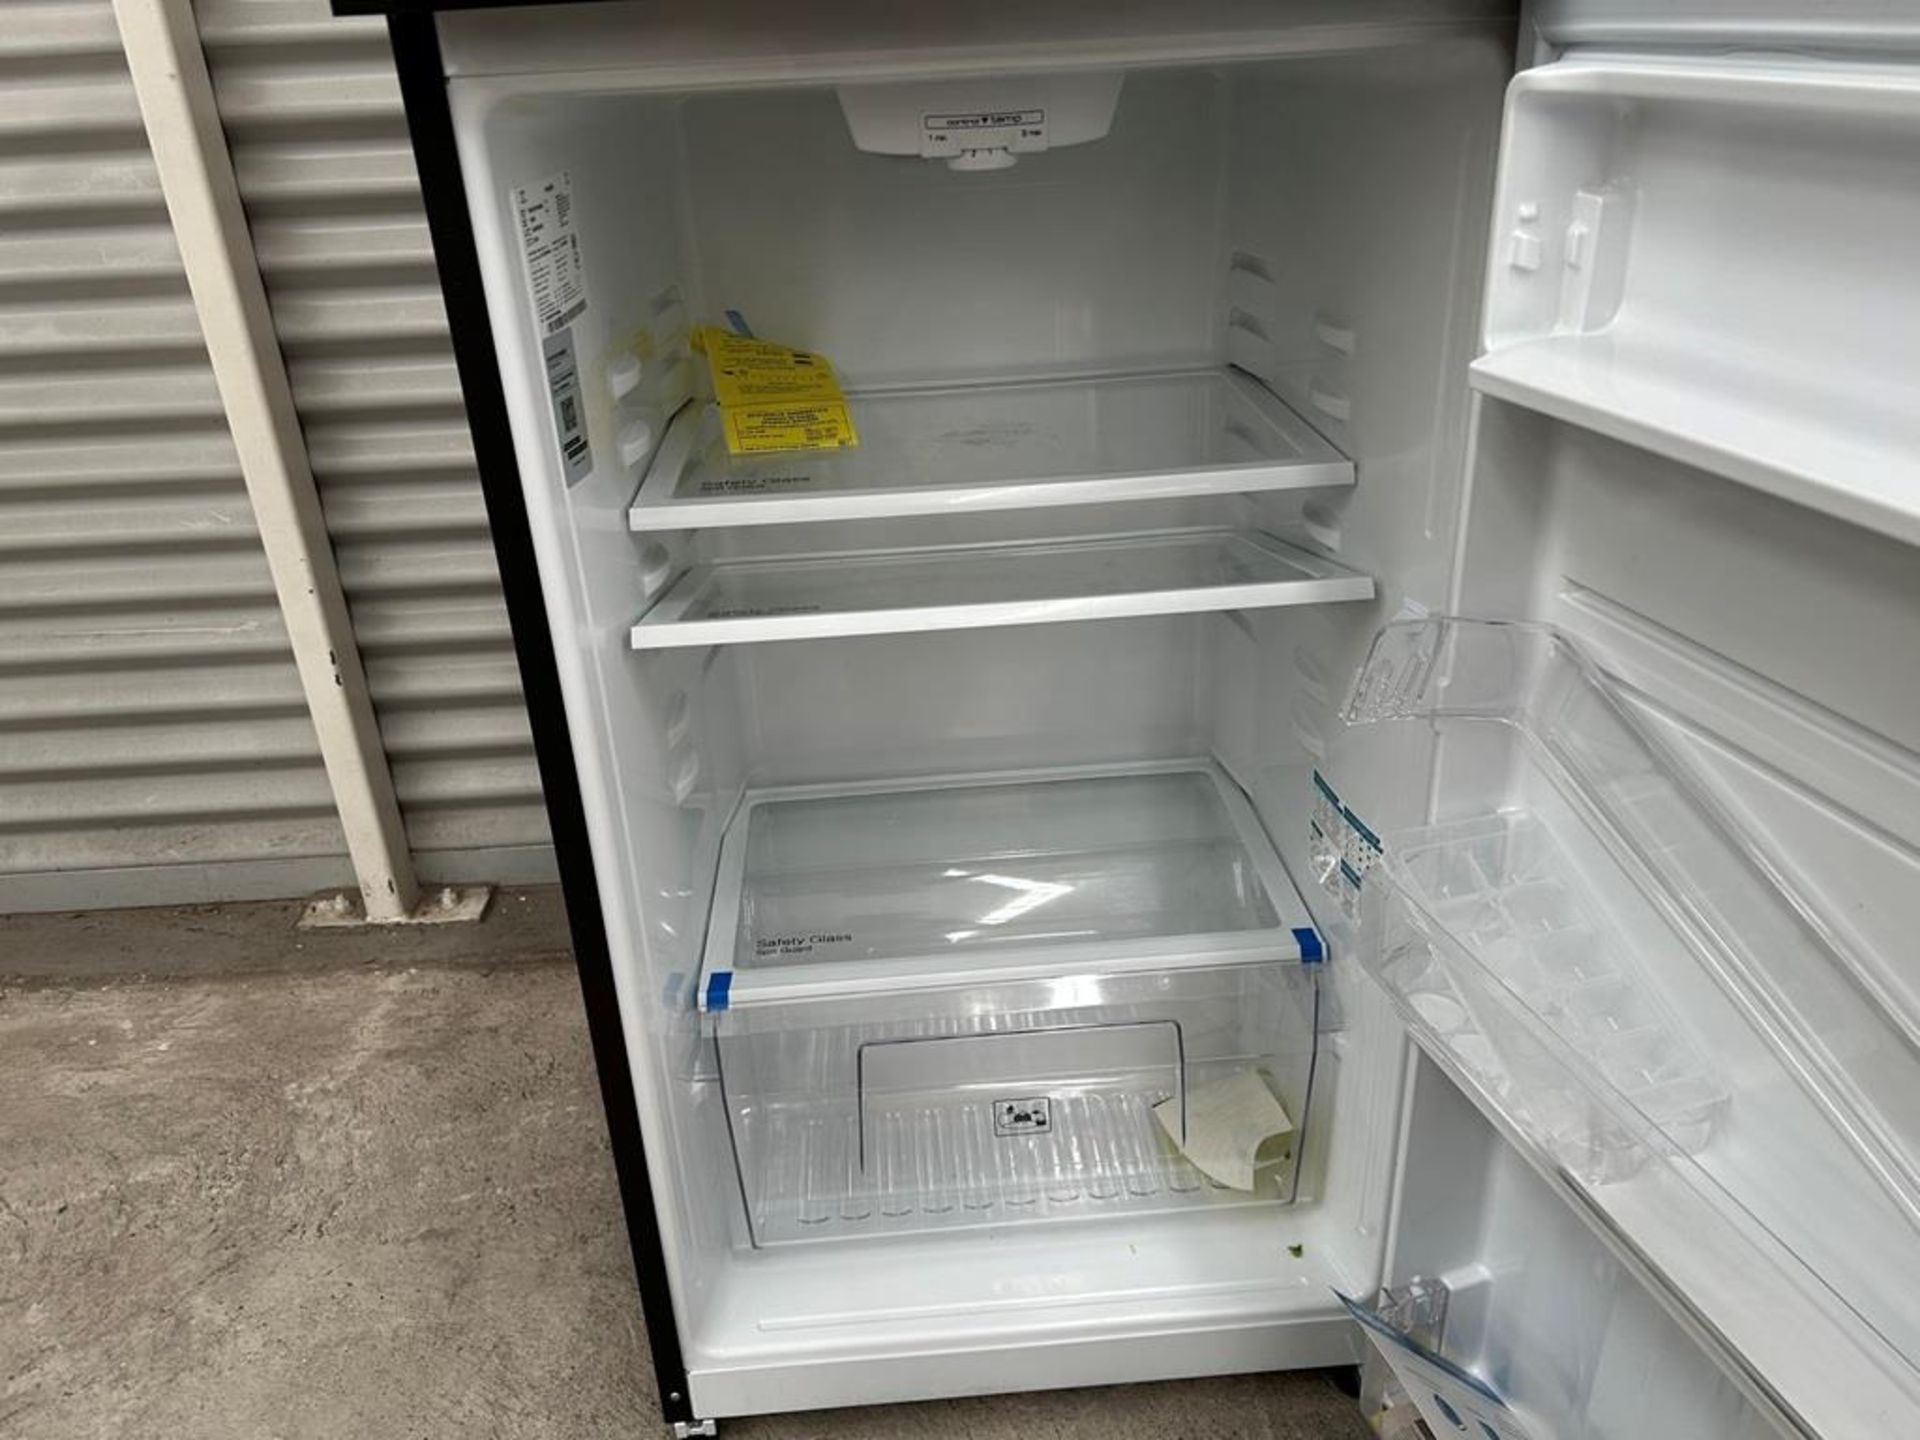 Lote de 2 refrigeradores contiene: 1 Refrigerador Marca MABE, Modelo RME360PVMRM0, Serie 04453, Col - Image 5 of 16